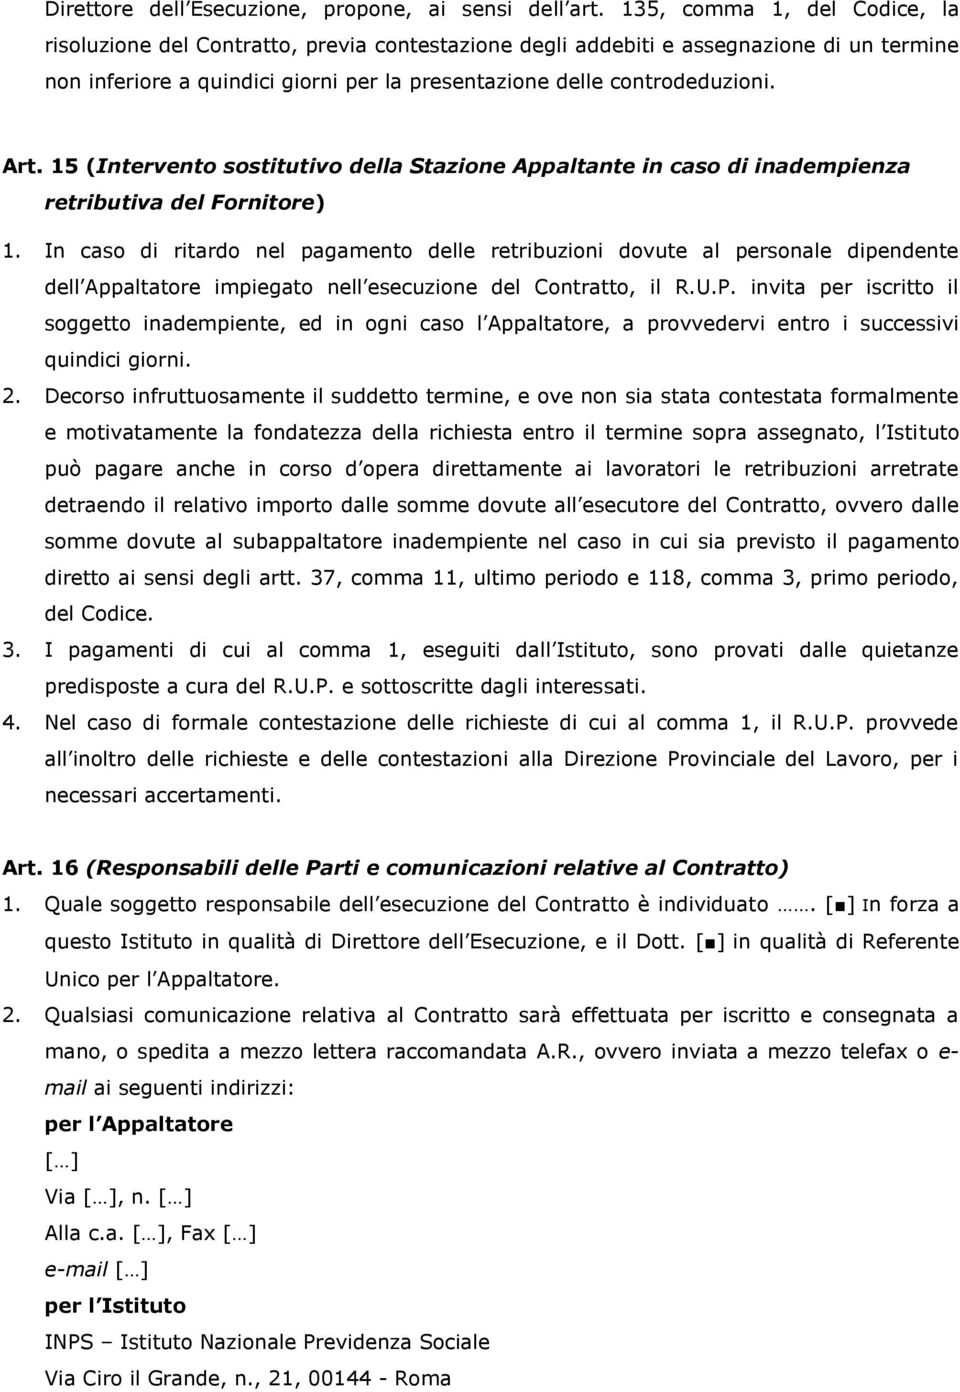 Art. 15 (Intervento sostitutivo della Stazione Appaltante in caso di inadempienza retributiva del Fornitore) 1.